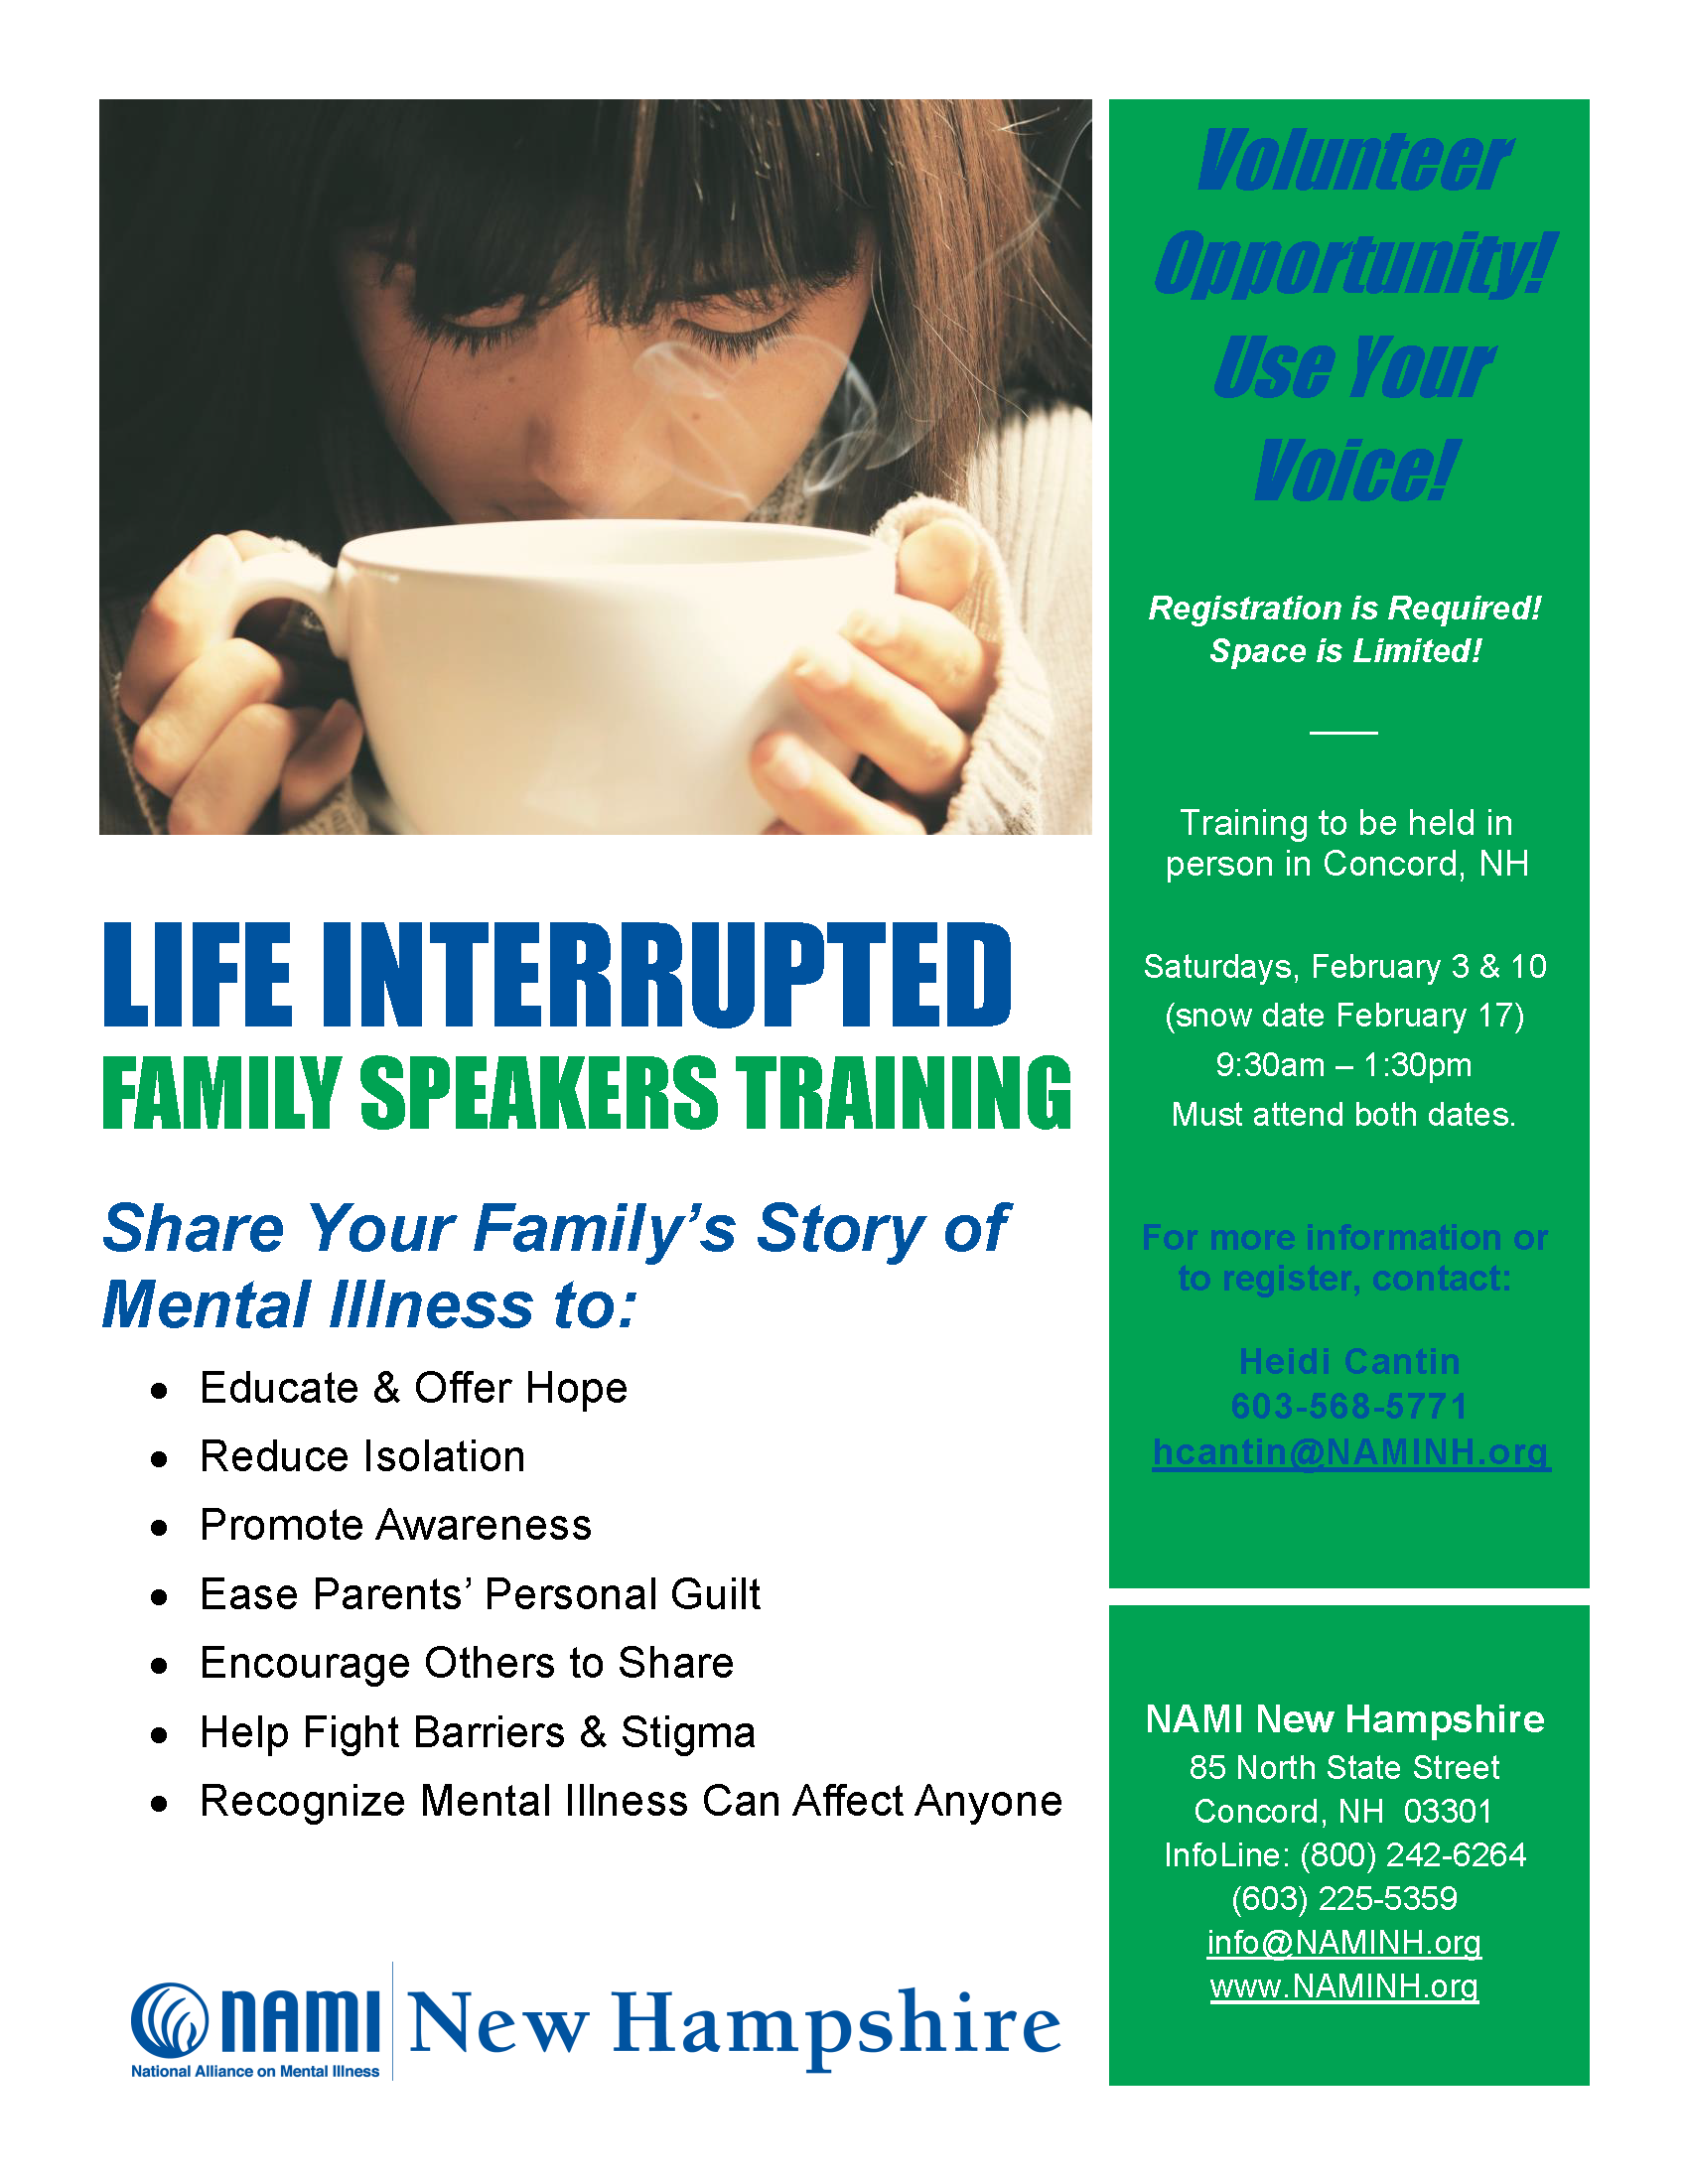 Life Interrupted Family Speaker Training